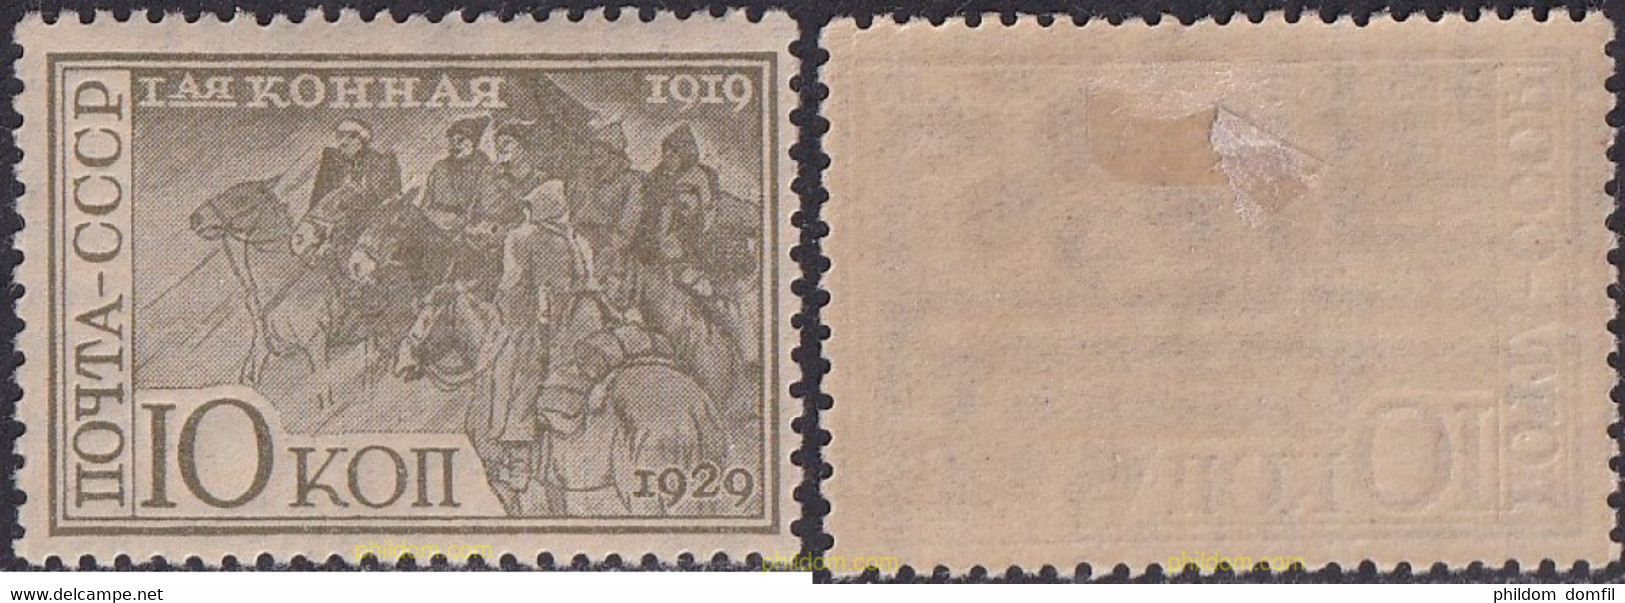 693680 HINGED UNION SOVIETICA 1930 CABALLOS - Collezioni